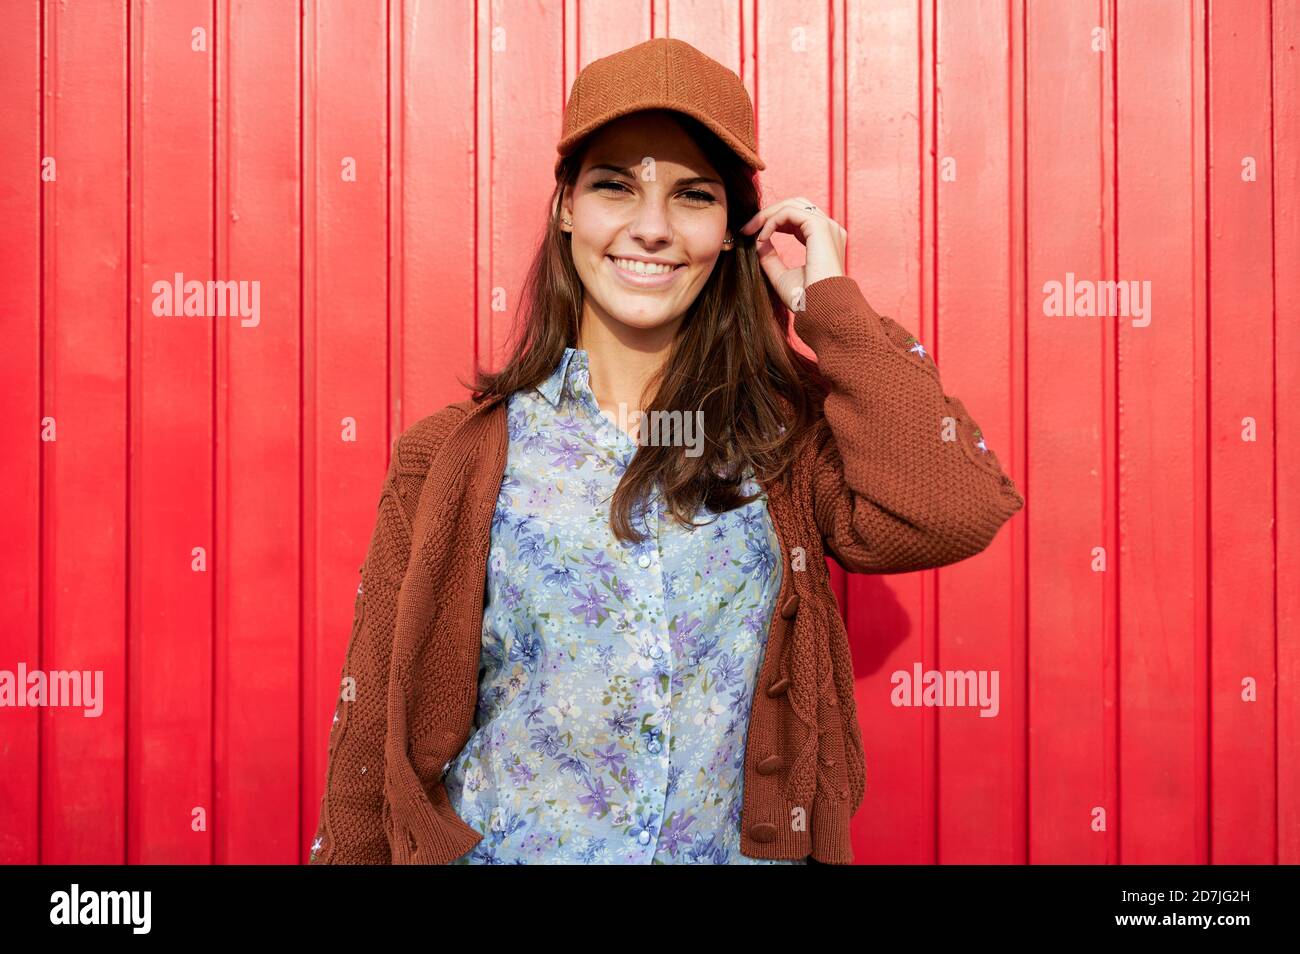 Lächelnde Frau mit Hut, der gegen die rote Metalltür steht Stockfoto